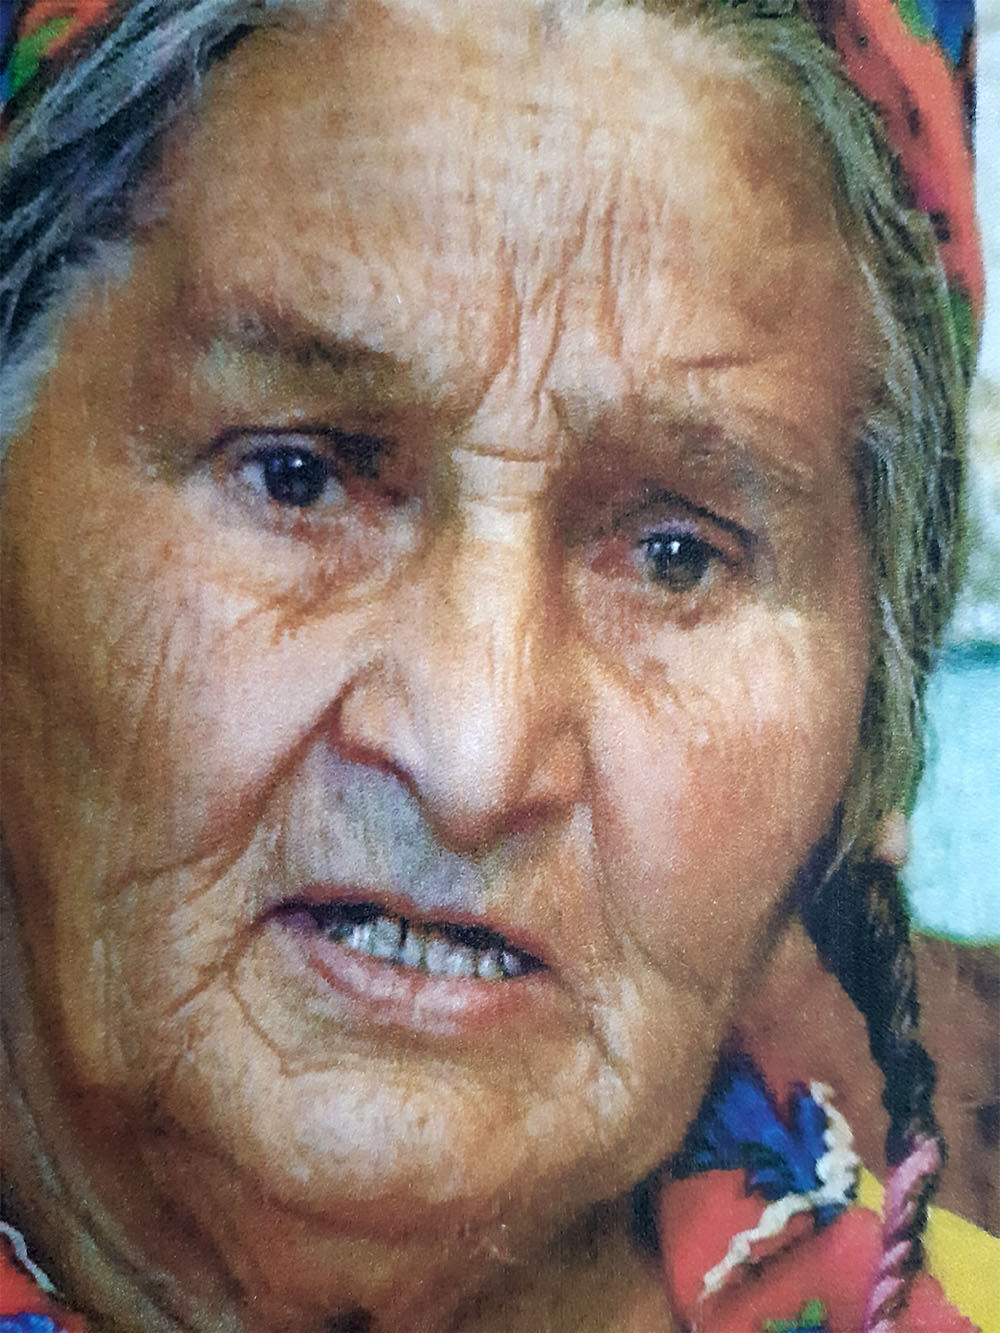 Eine der Roma-Frauen aus dem Film. Foto: © Luminiţa Mihai Cioabă